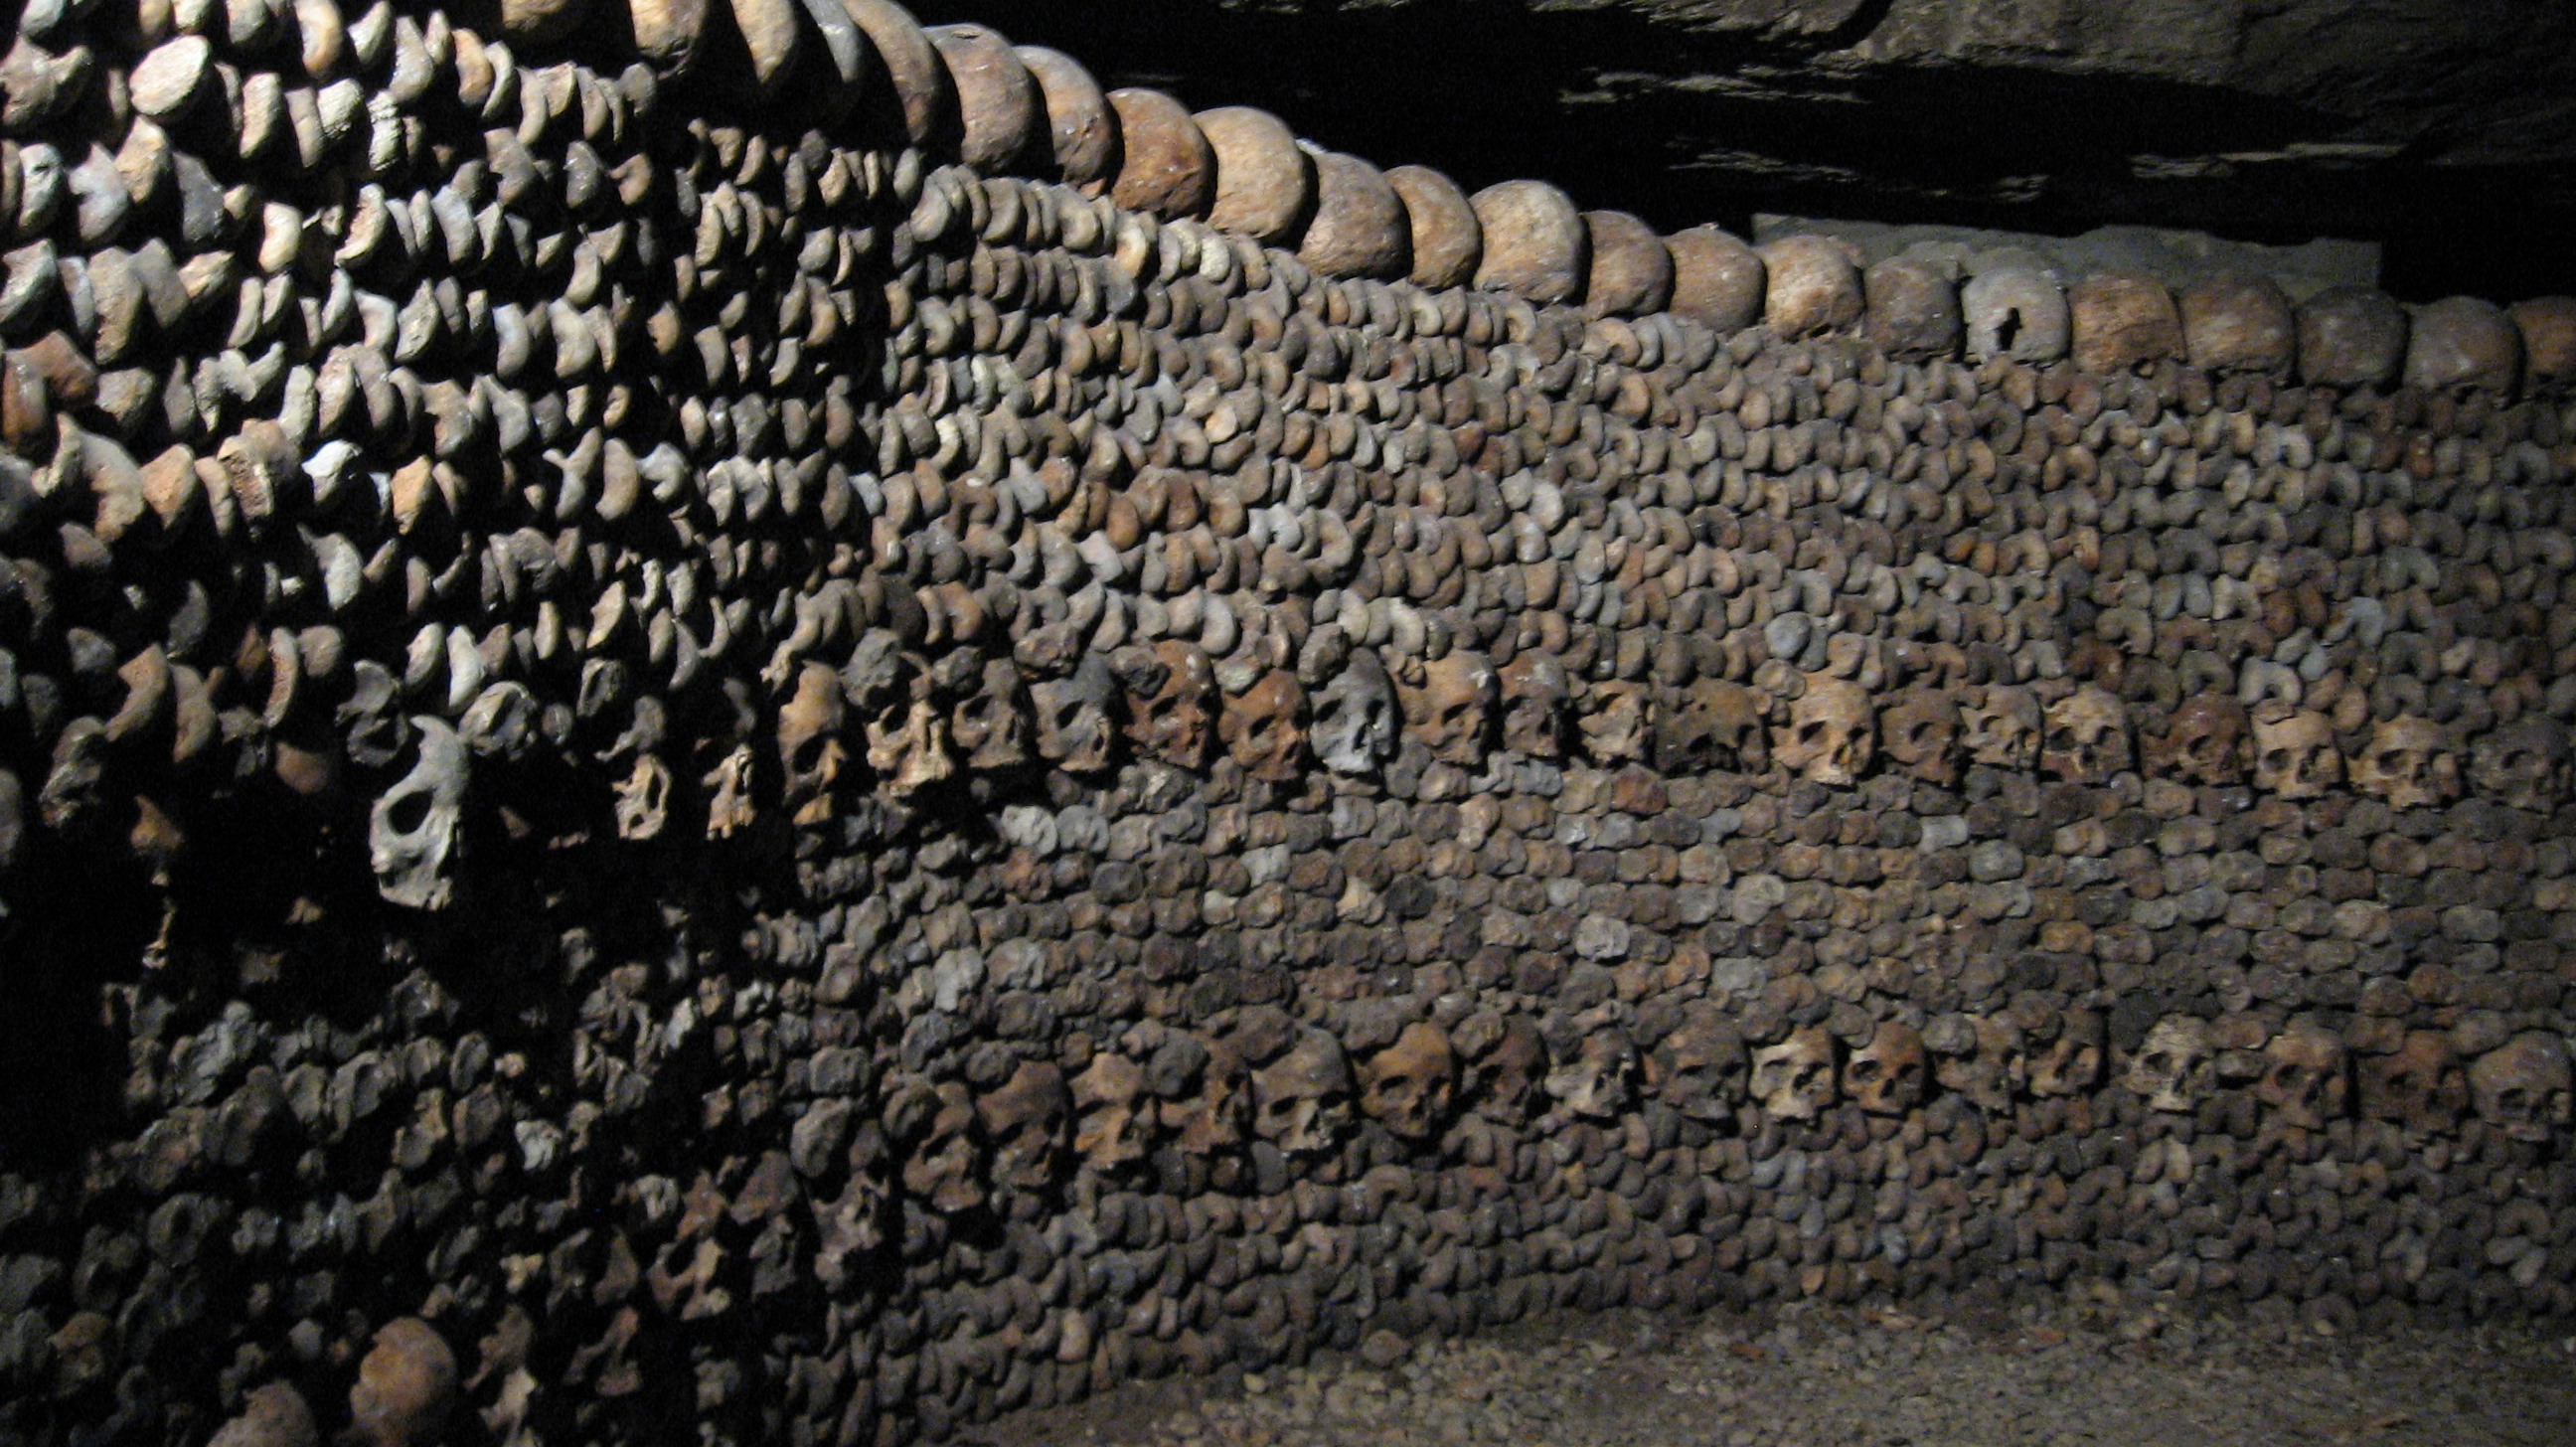 Rùng rợn khu mộ kỳ bí chứa hơn 6 triệu hài cốt dưới lòng kinh đô Paris